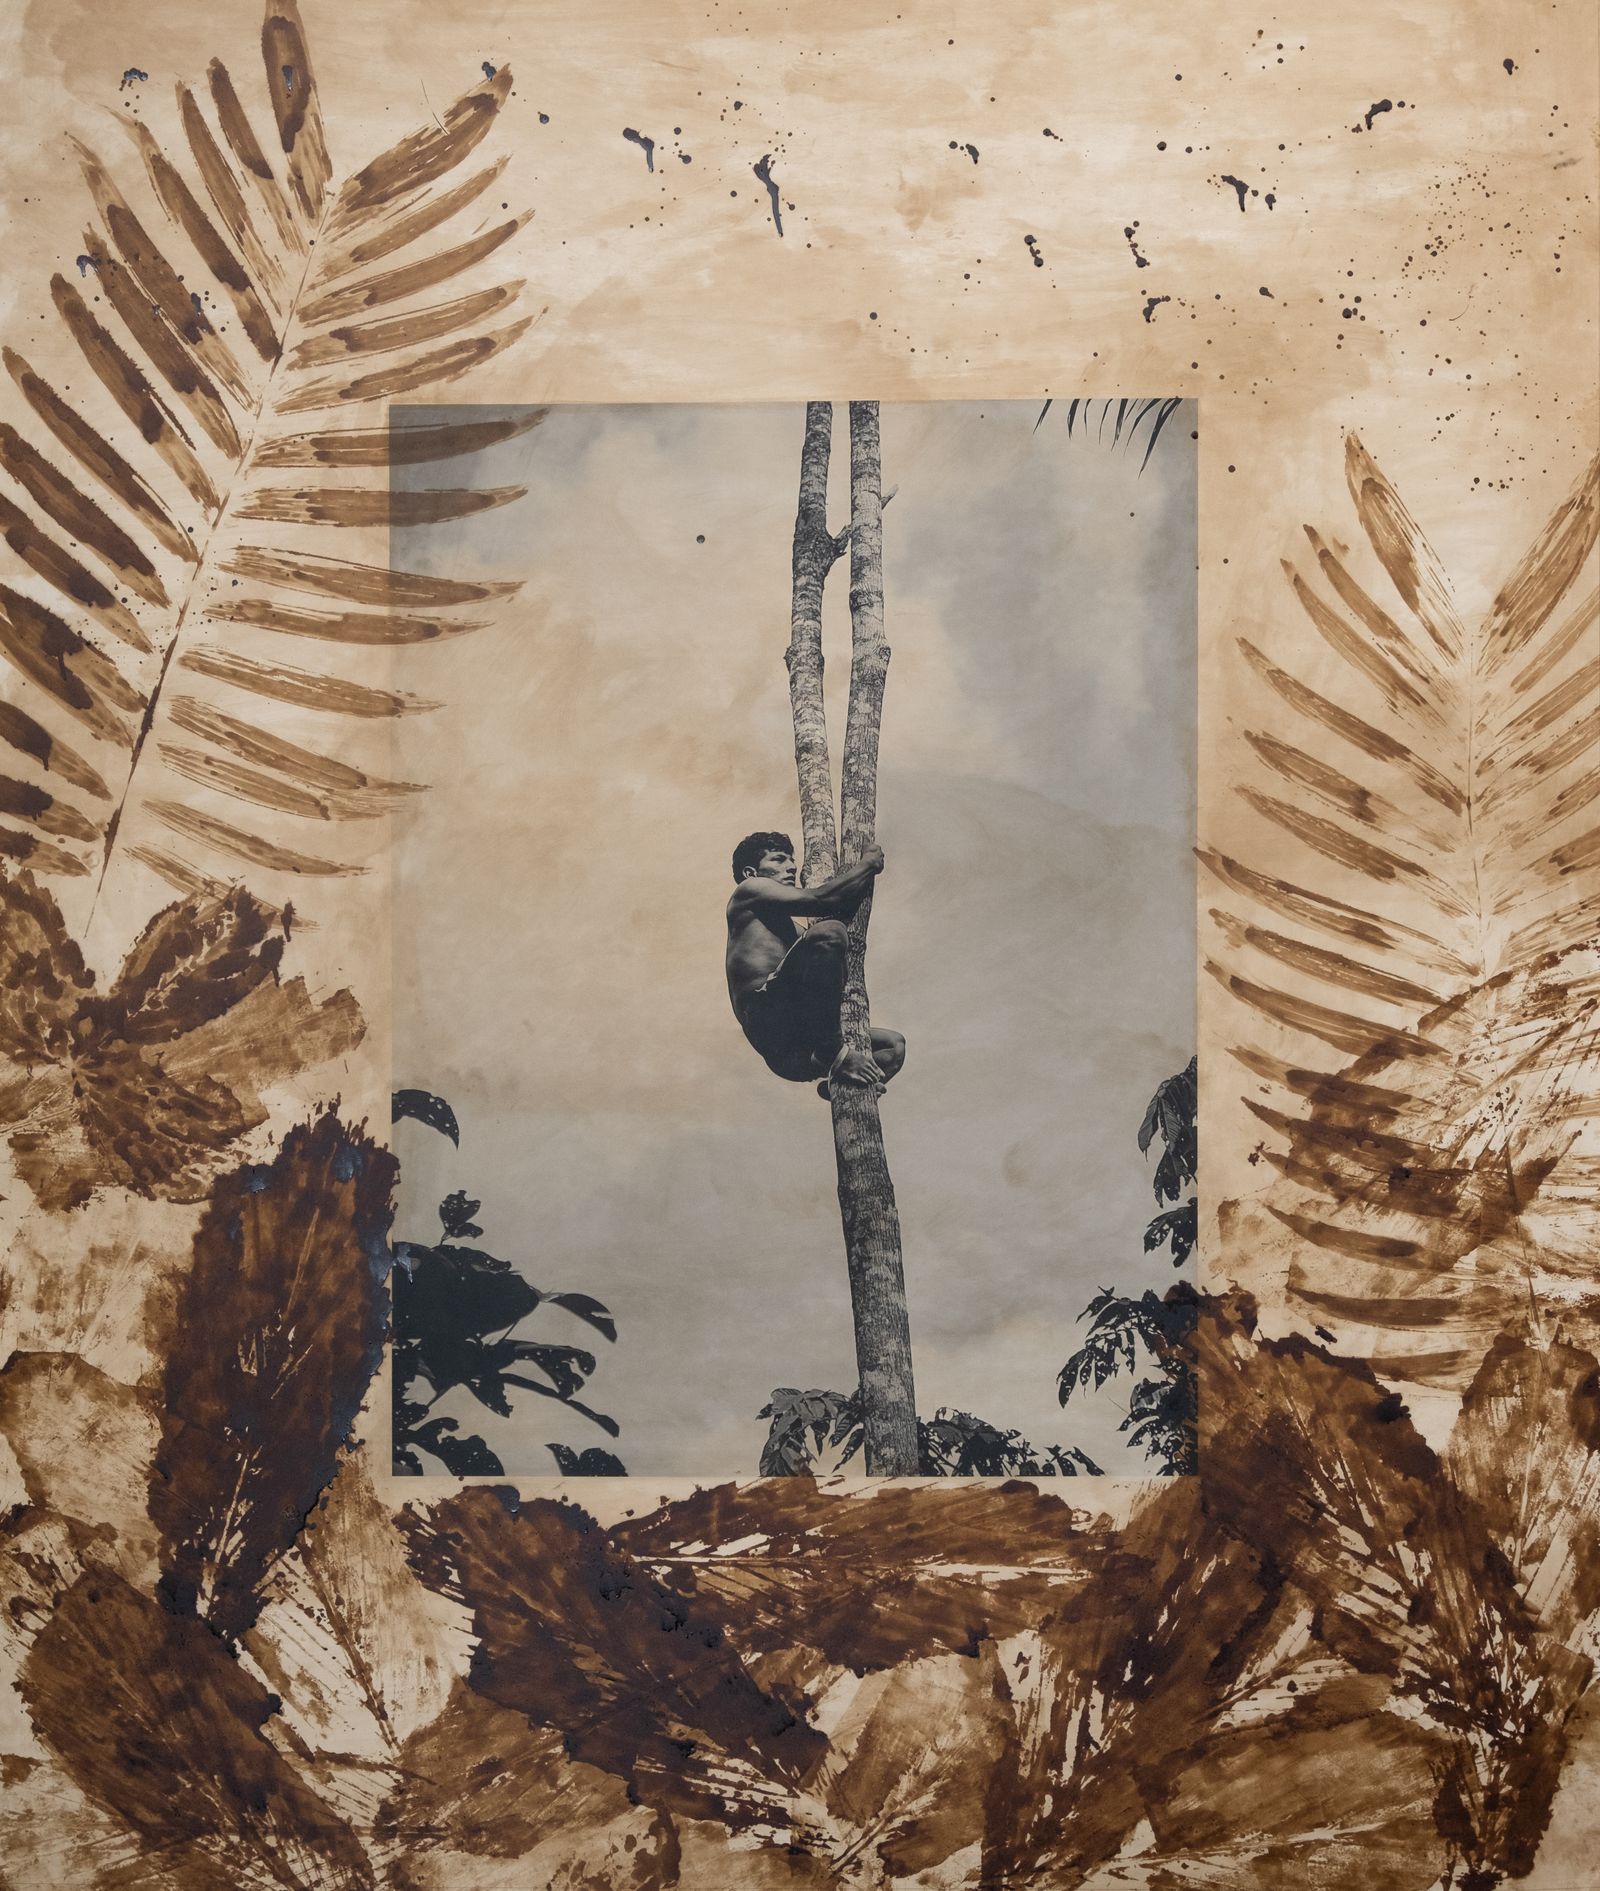 © Felipe Jacome - A young Waorani man climbs up a tree to pick chontaduro palm fruits.